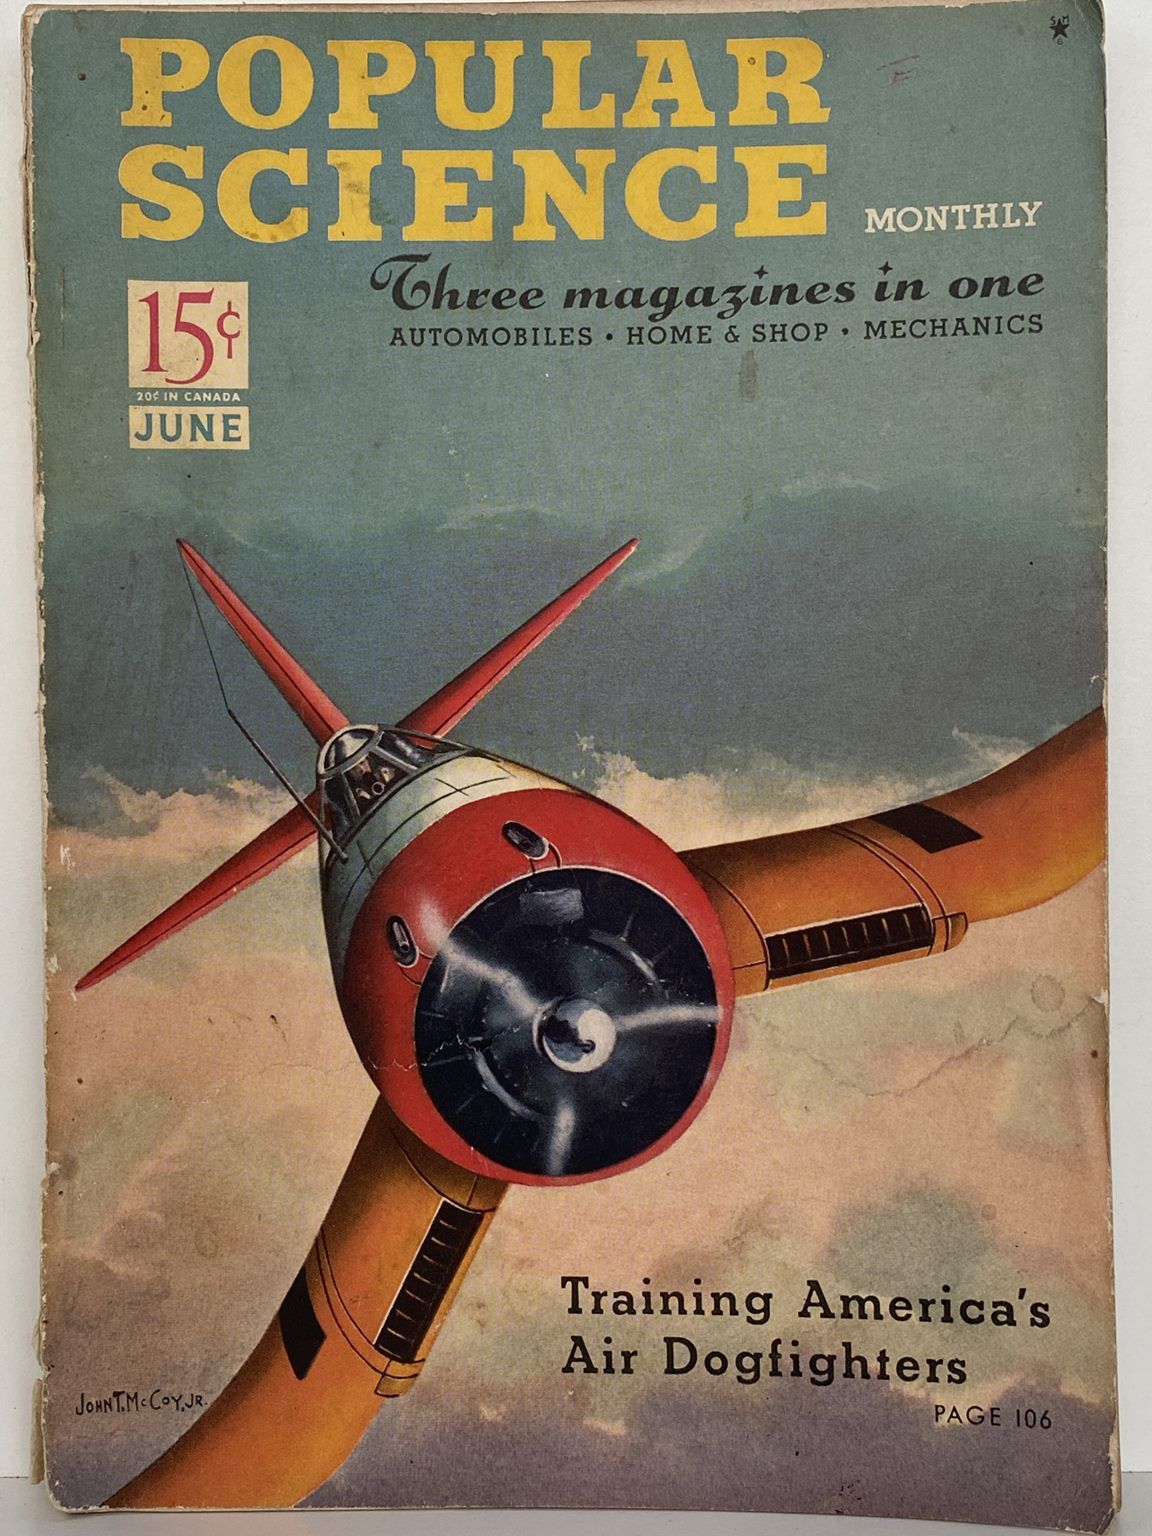 VINTAGE MAGAZINE: Popular Science - Vol. 138, No. 6 - June 1941